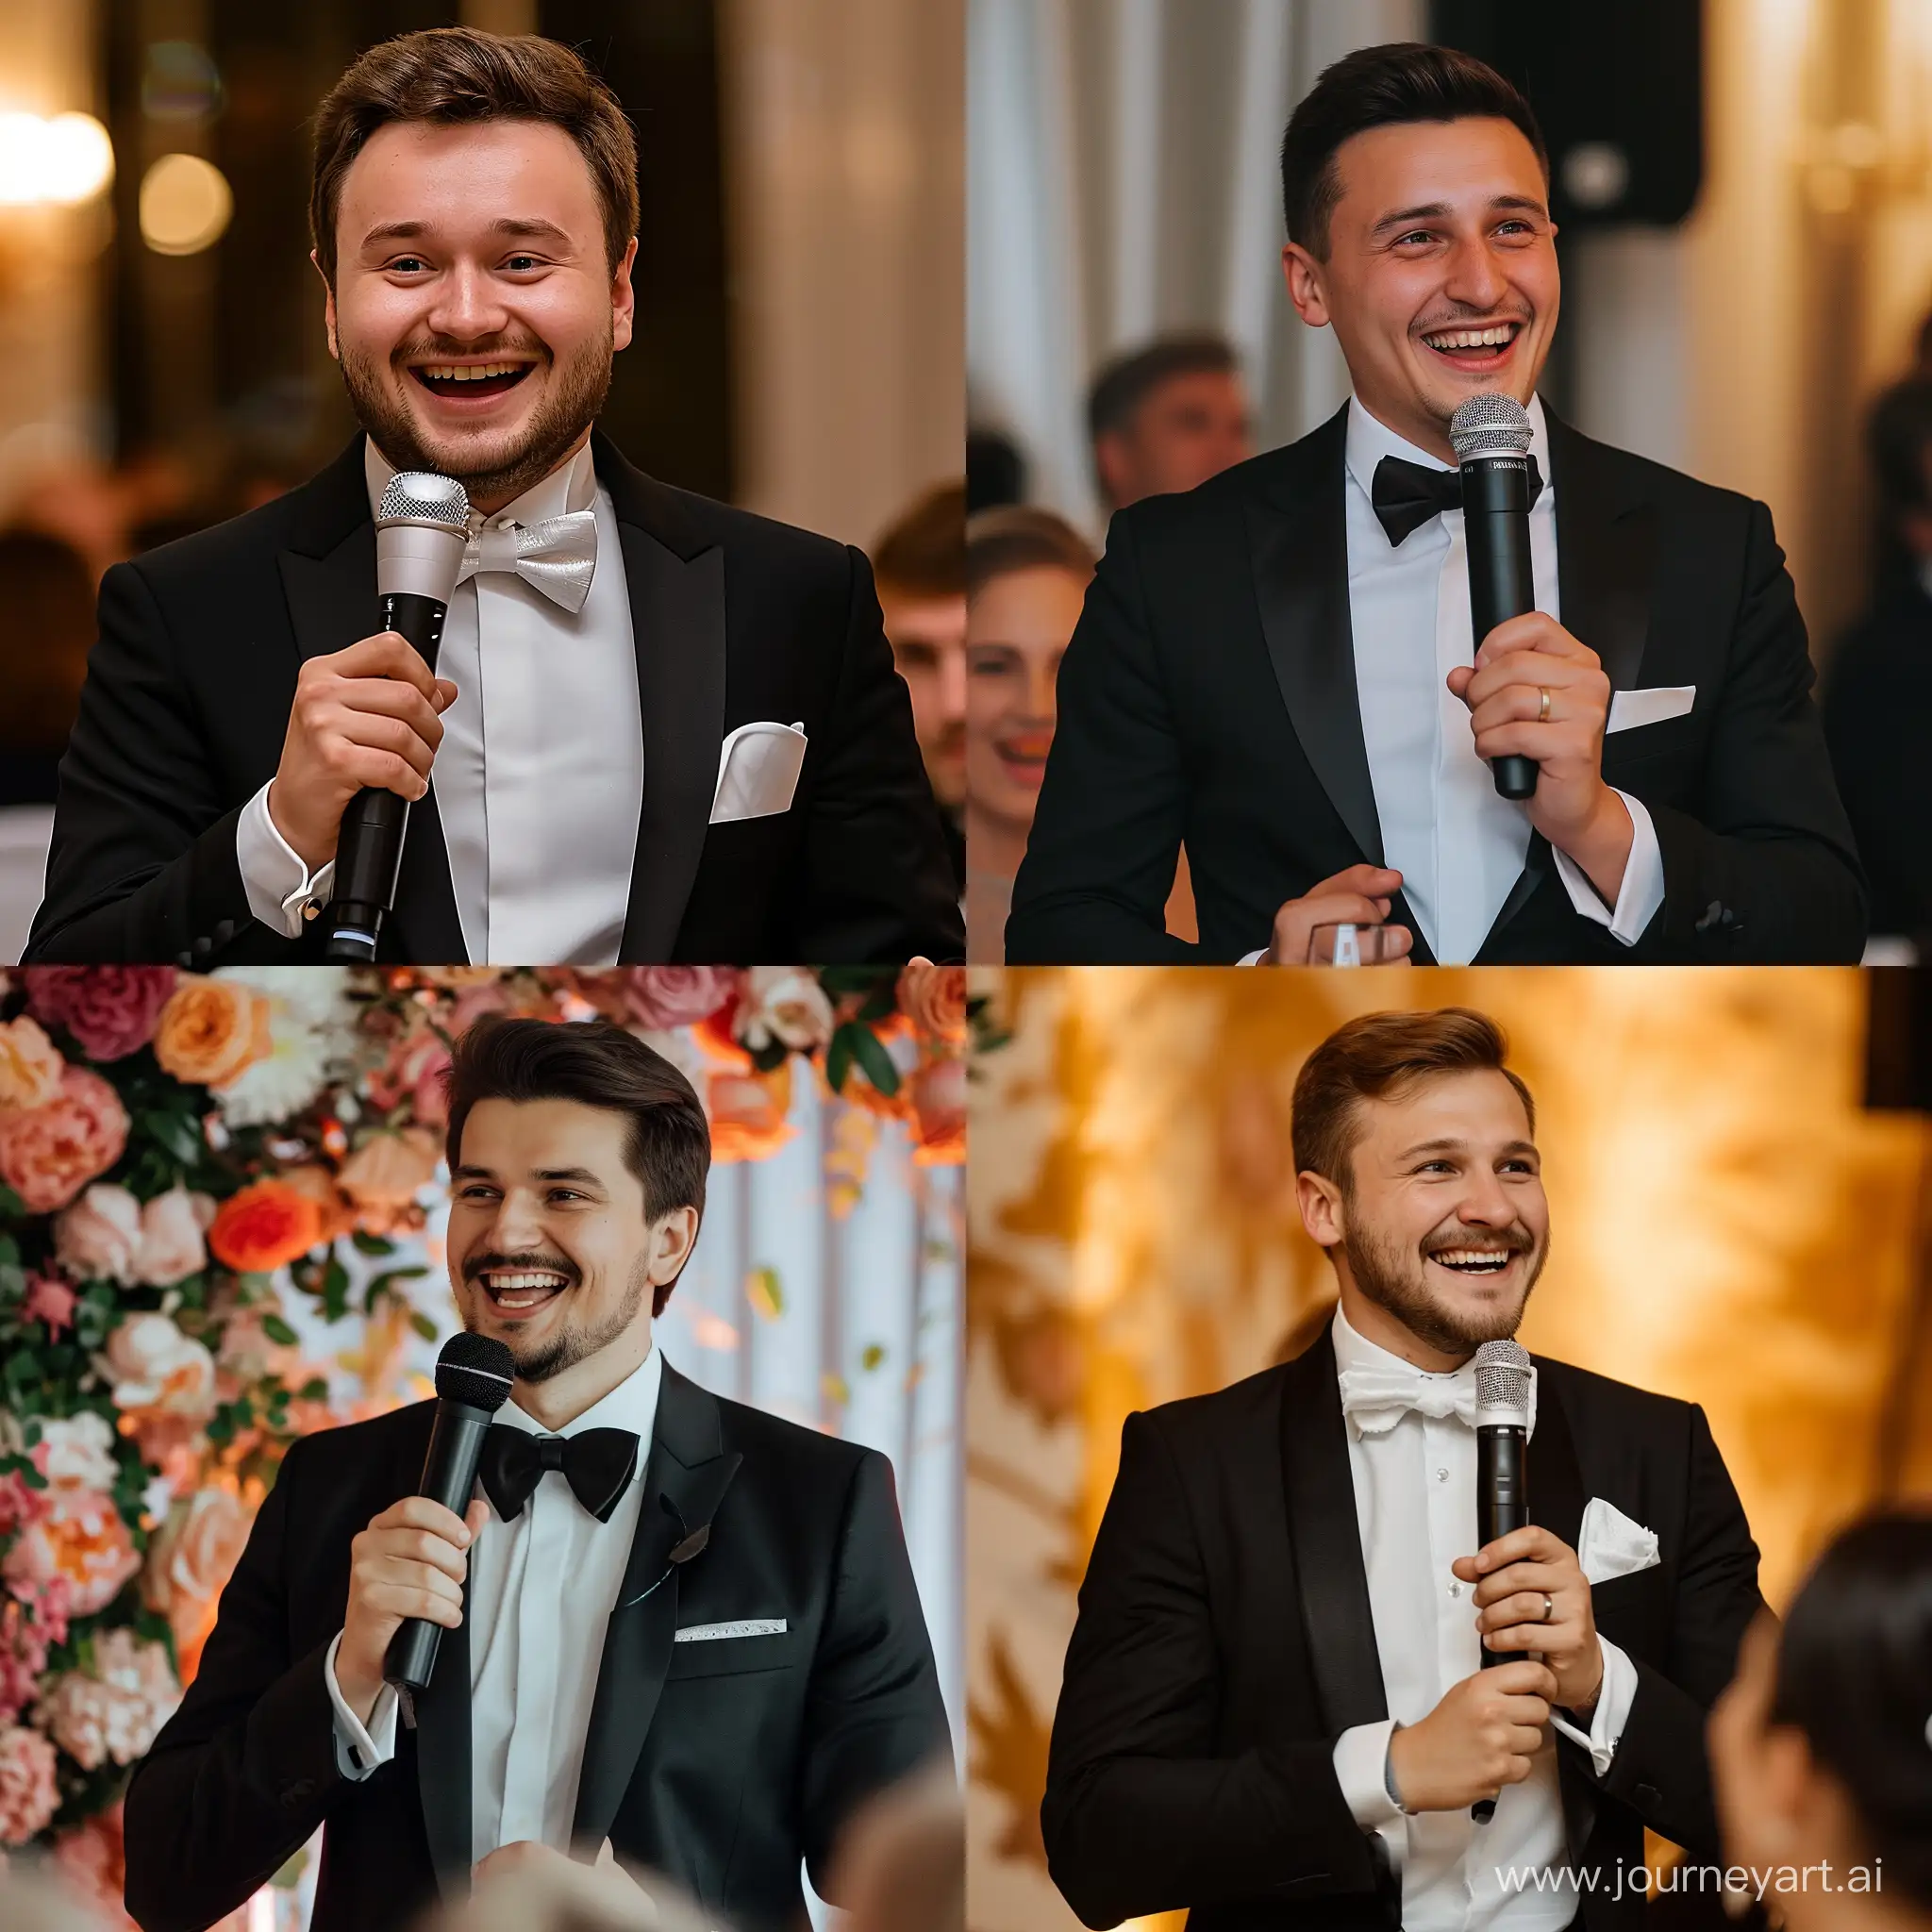 Ведущий на свадьбу Юрий Тунян в черном смокинге, в белой рубашке с галстуком бабочкой, улыбается и держит микрофон в руке